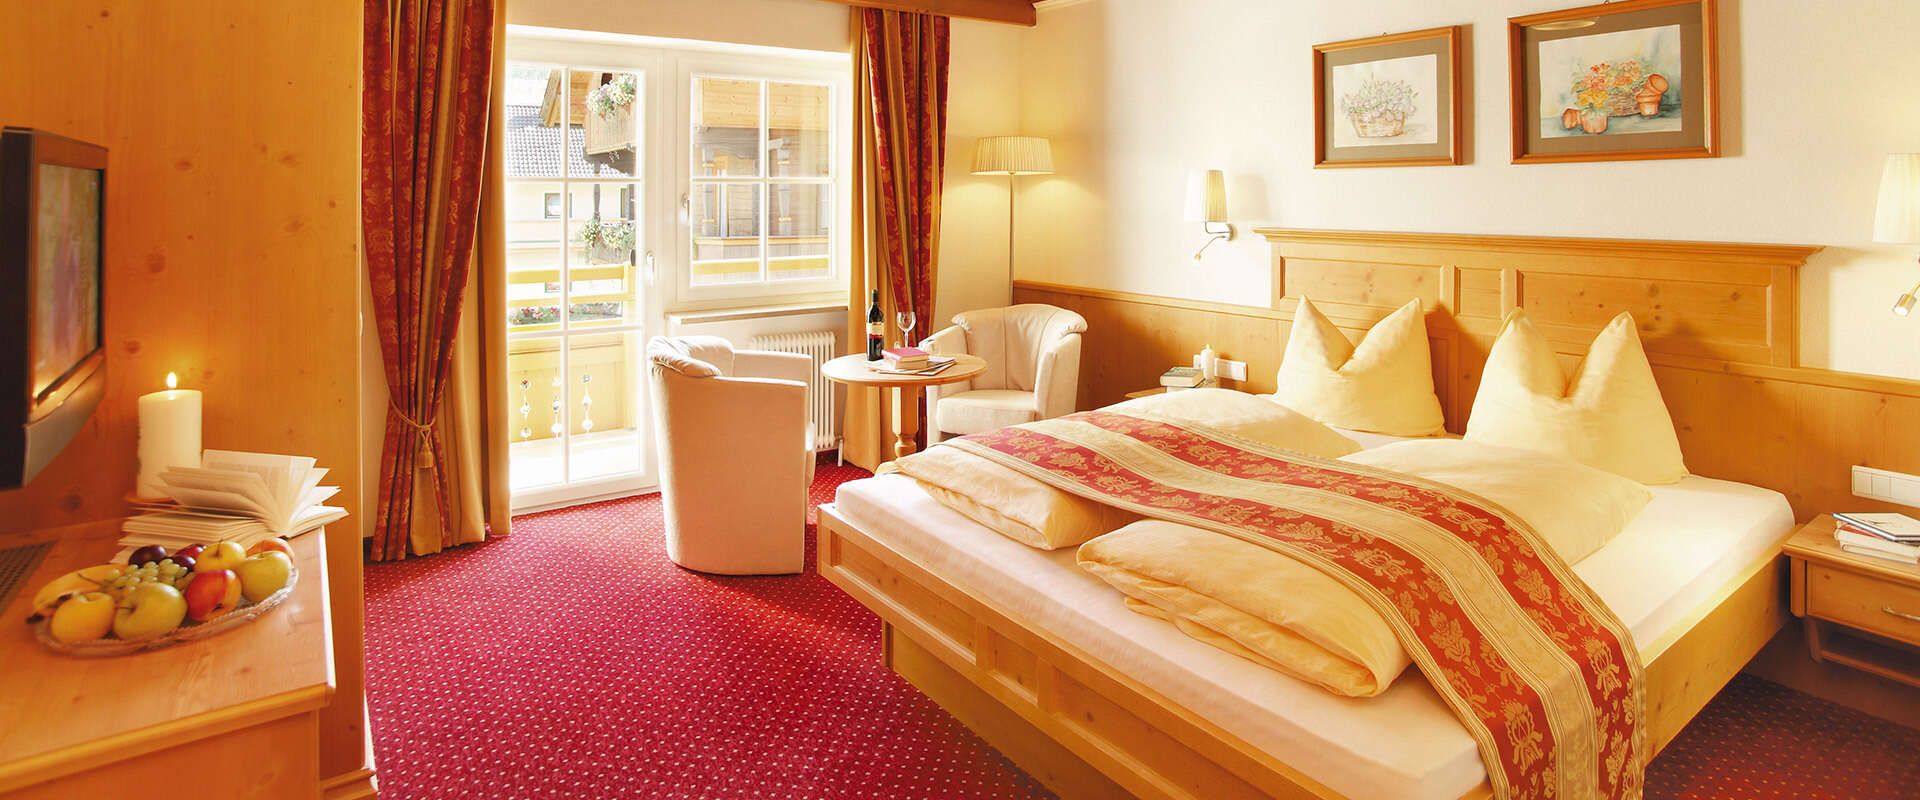 Comfort room in the Hotel Alpenherz in the Zillertal, Tyrol